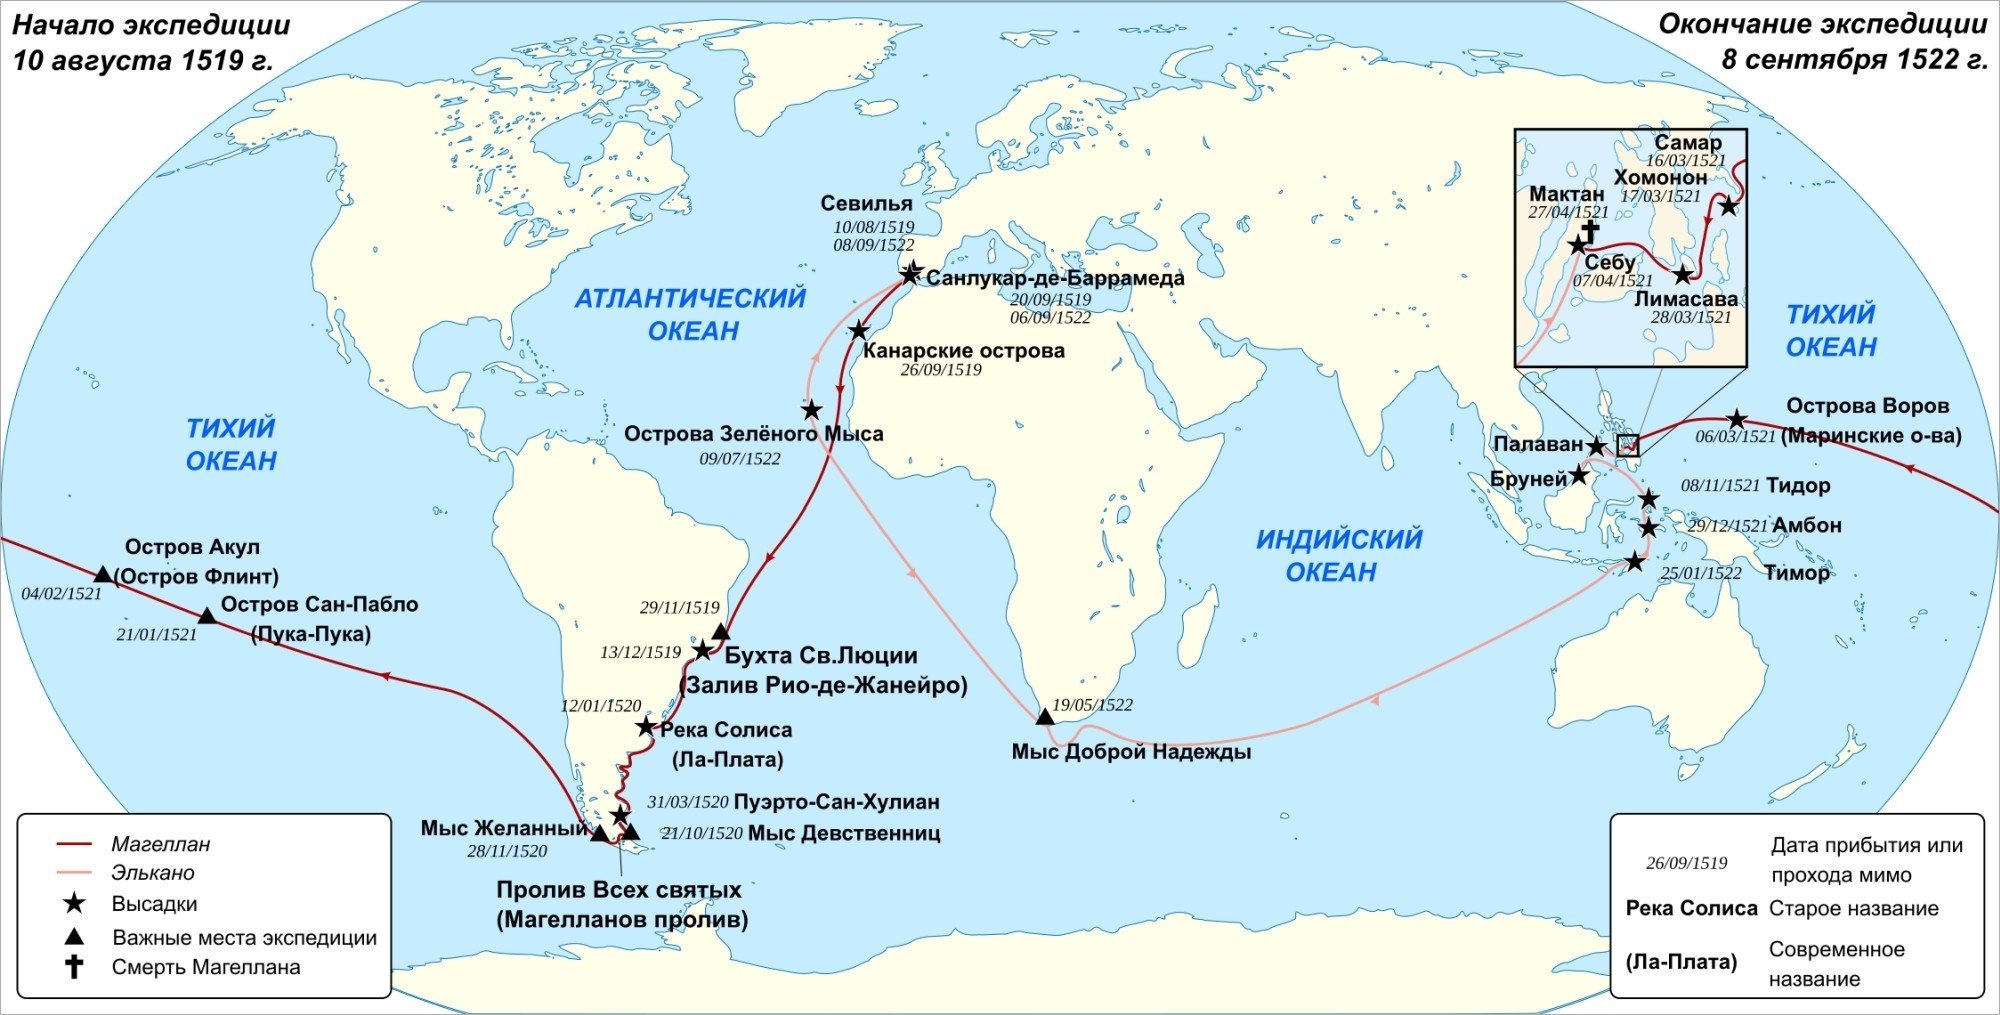 Карта первого кругосветного плавания (1519-1522 гг.)